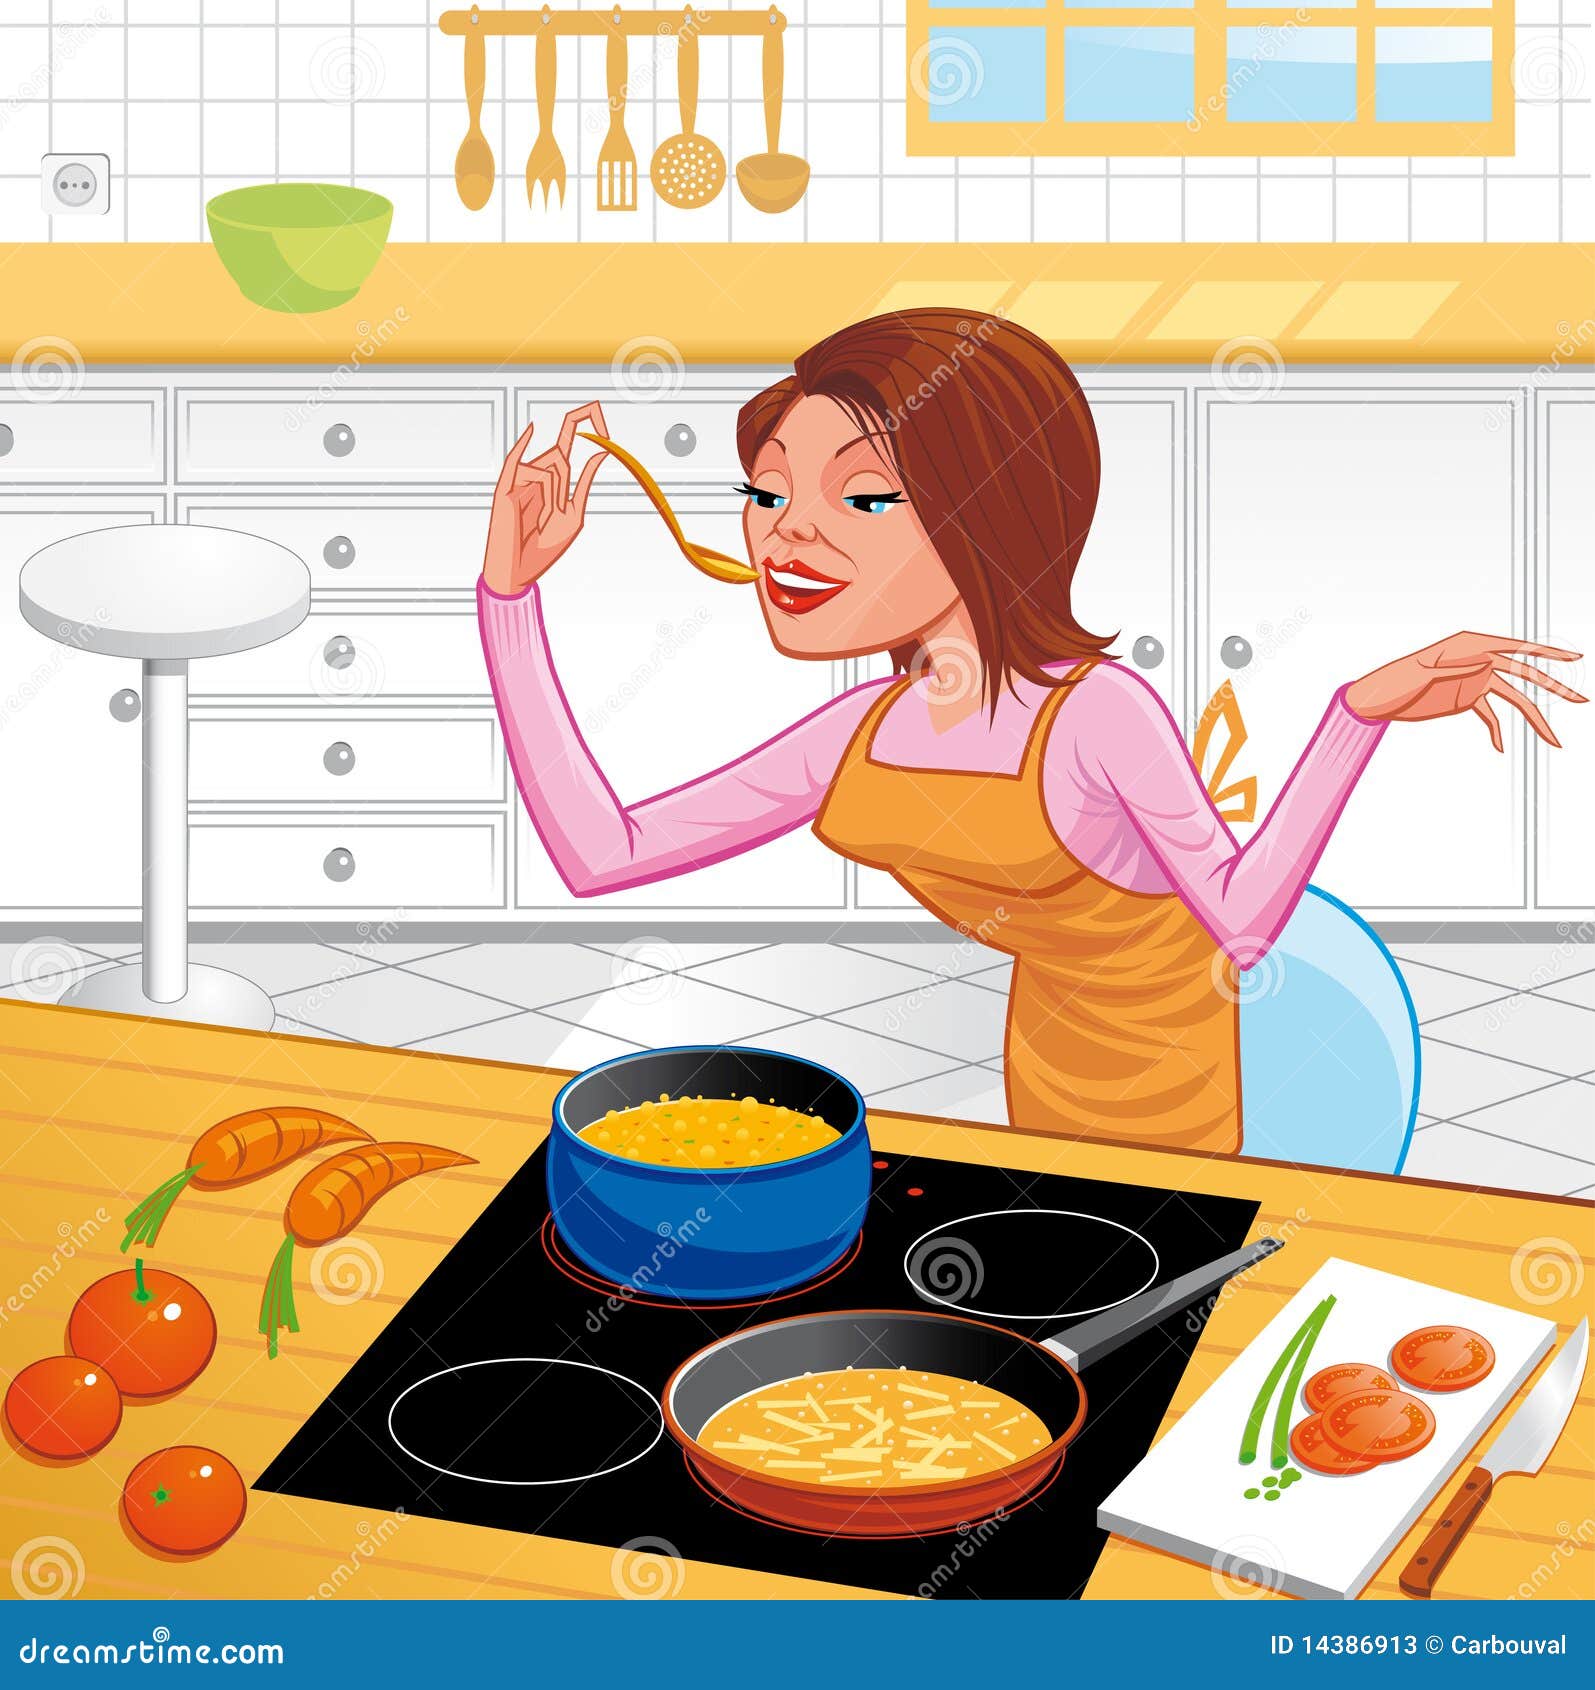 Мама сегодня готовлю я. Готовка рисунок. Мама готовит. Рисования женщина на кухне. Продукты для готовки иллюстрации.